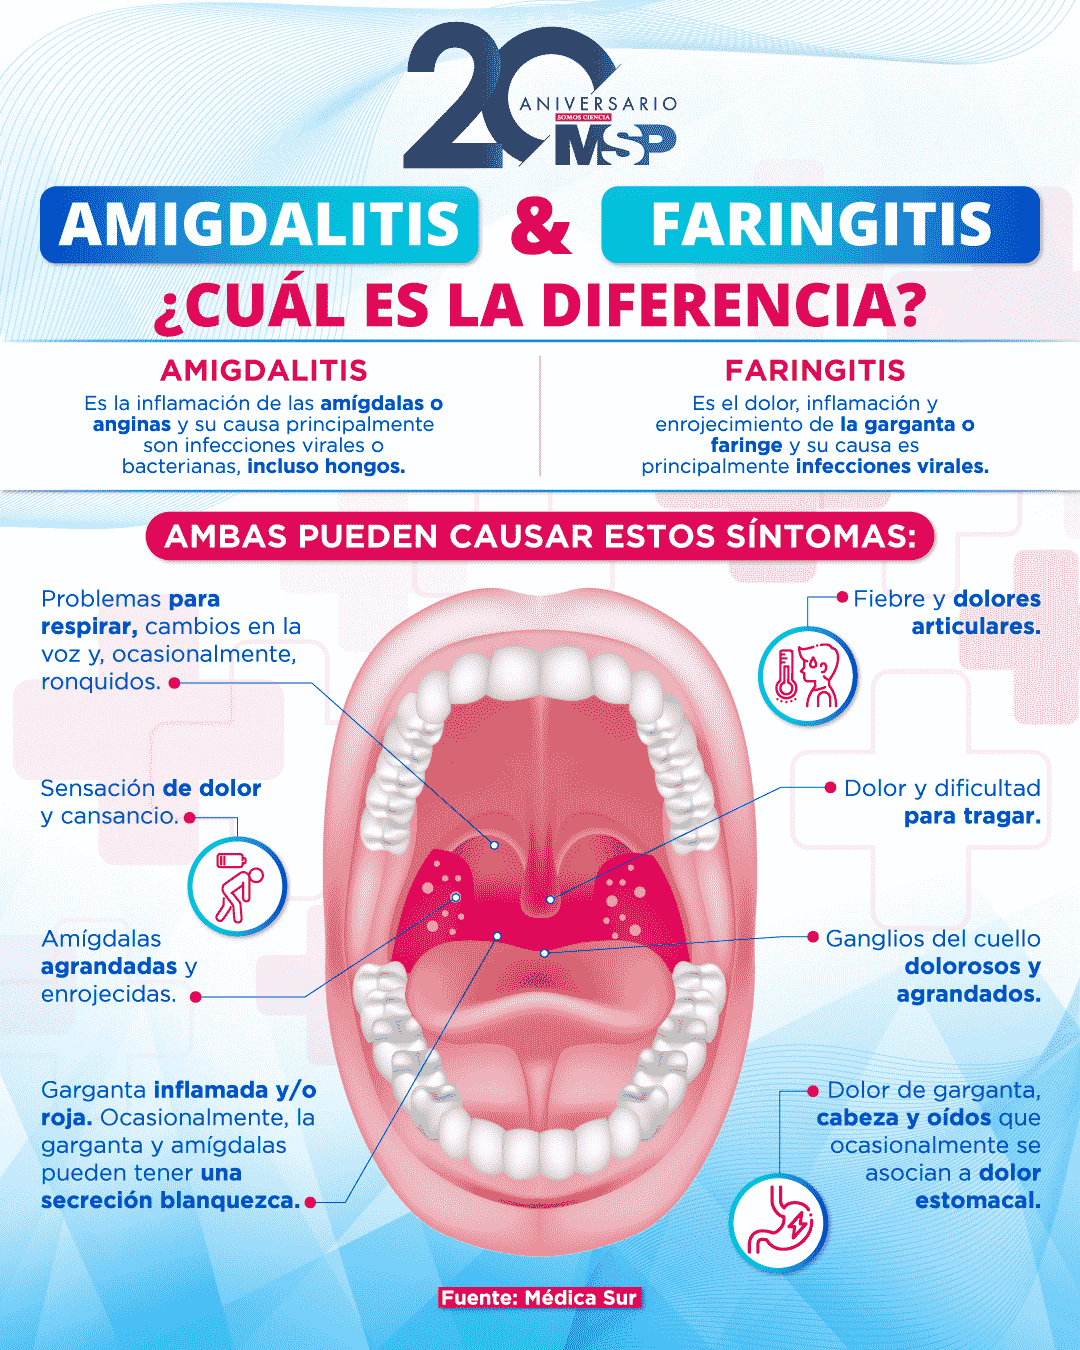 Amigdalitis y faringitis ¿Cuál es la diferencia?